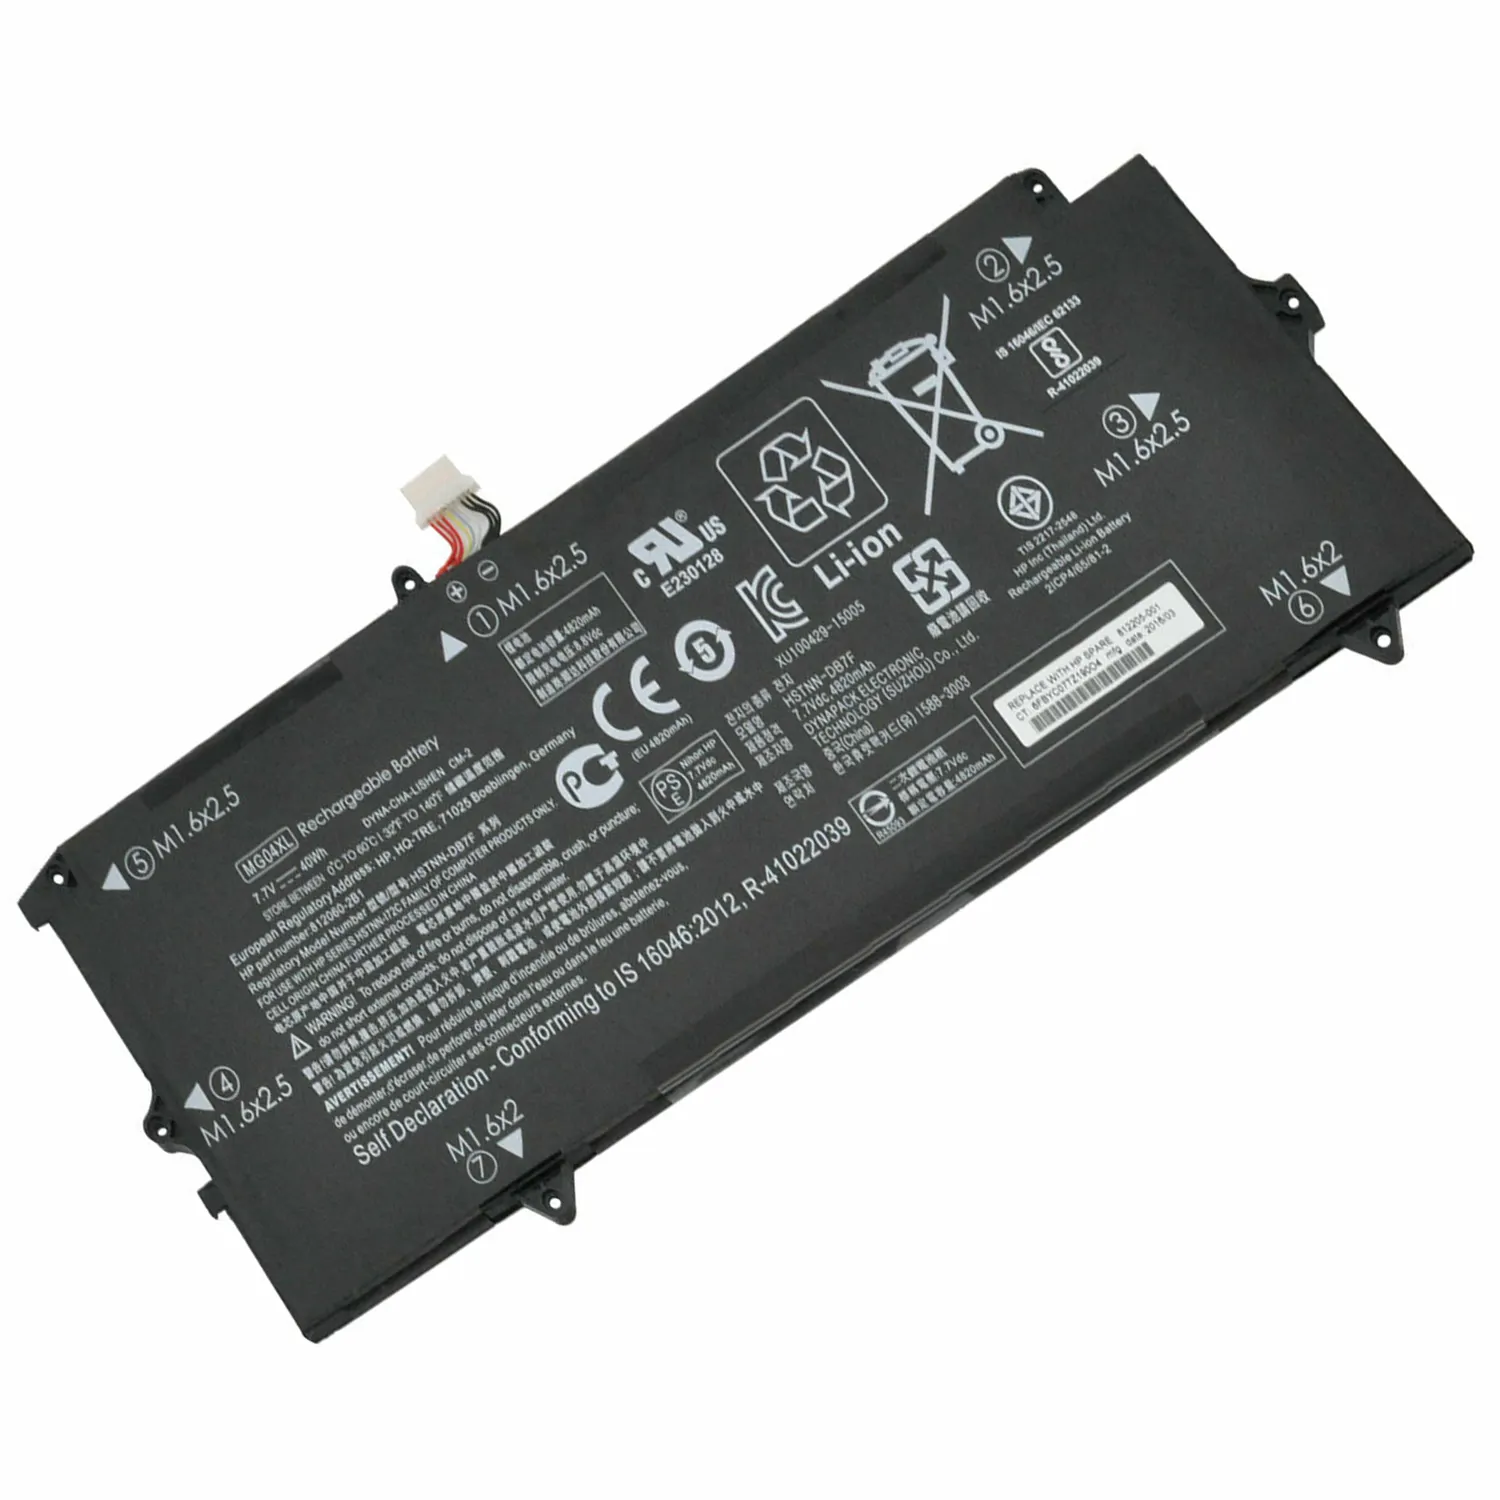 Baterai laptop HSTNN-DB7F MG04XL 7.7V 4820mAh 40Wh 4 sel untuk HP Elite x2 seri 1012 G1 baterai notebook